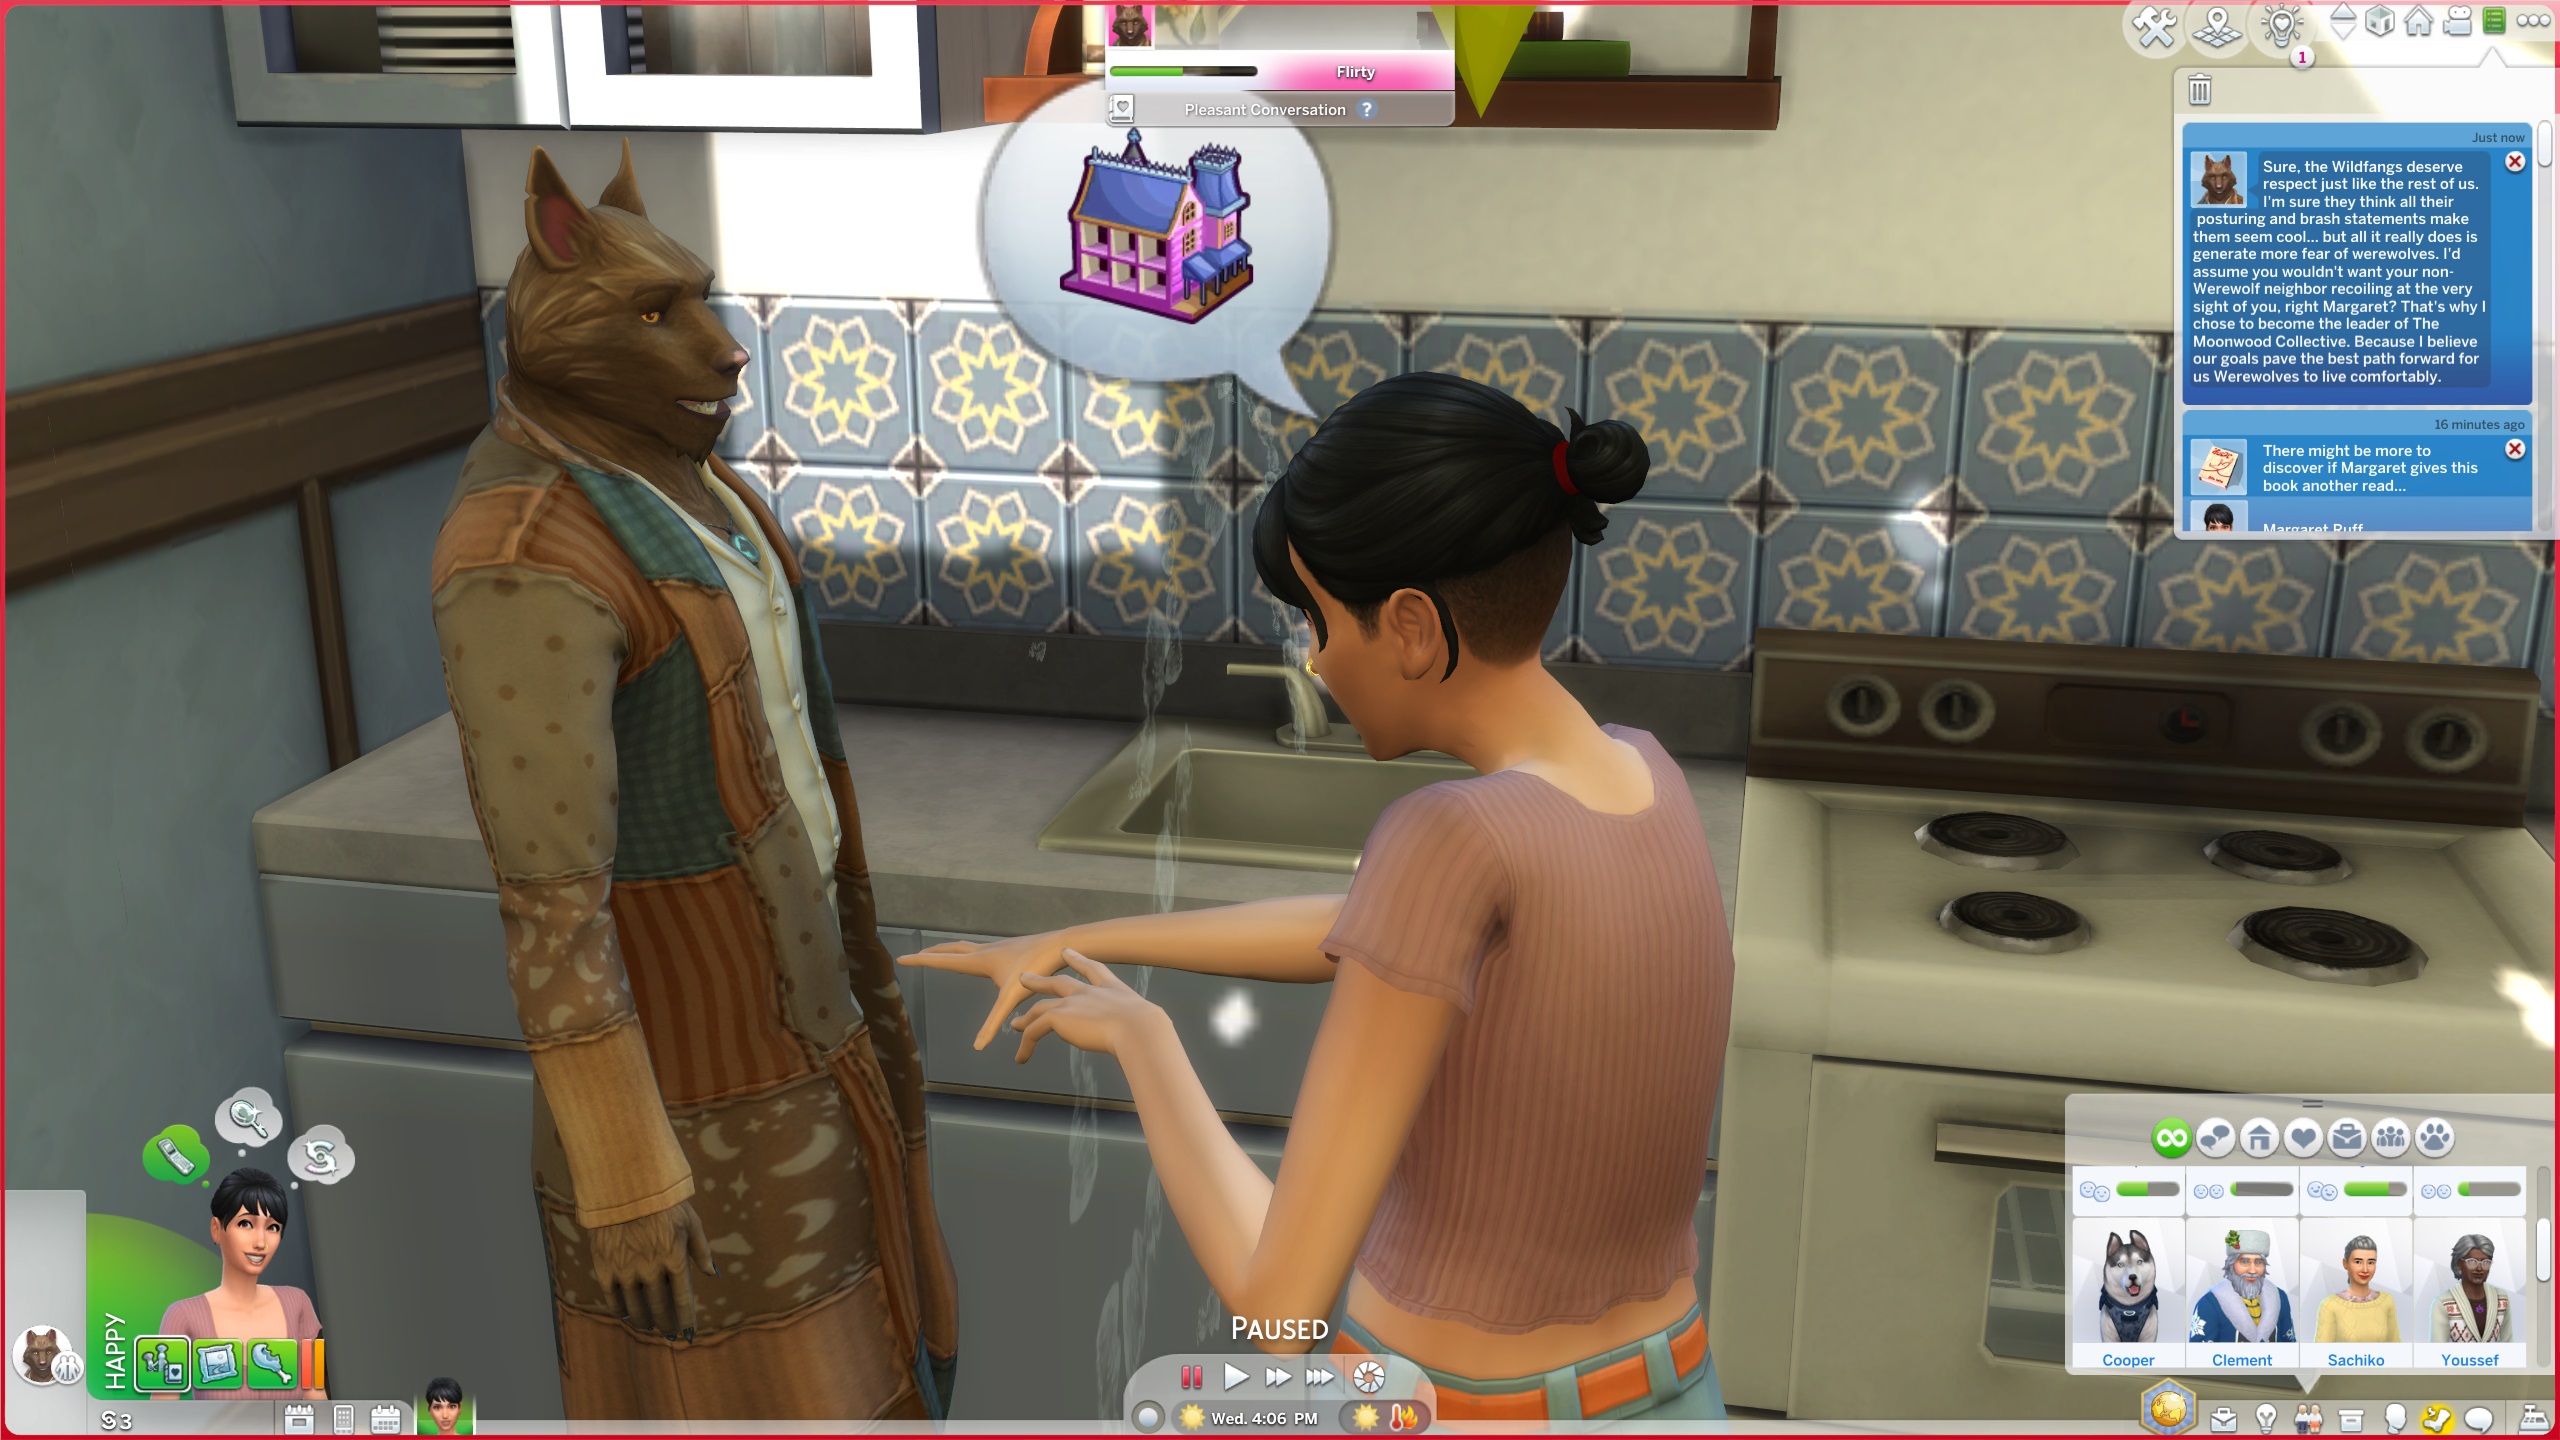 Les Sims 4 Loups-garous - Un Sim discutant avec Kristopher le loup-garou dans une cuisine.